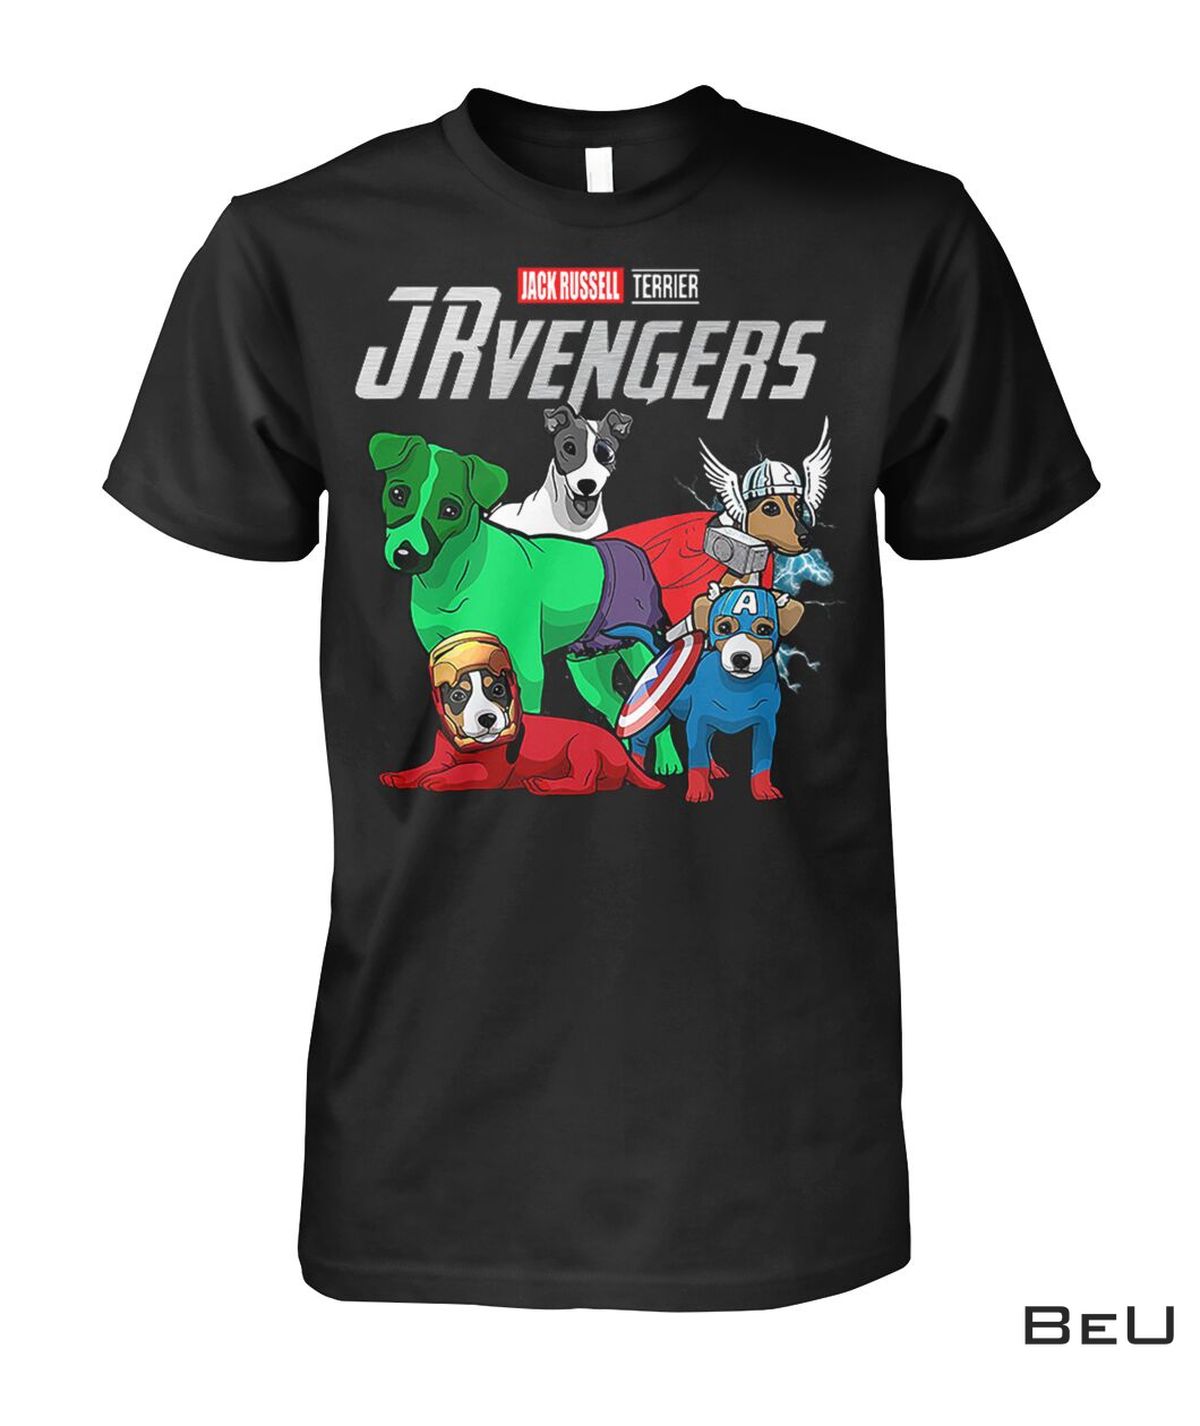 Jack Russell Terrier JRvengers Avengers Shirt